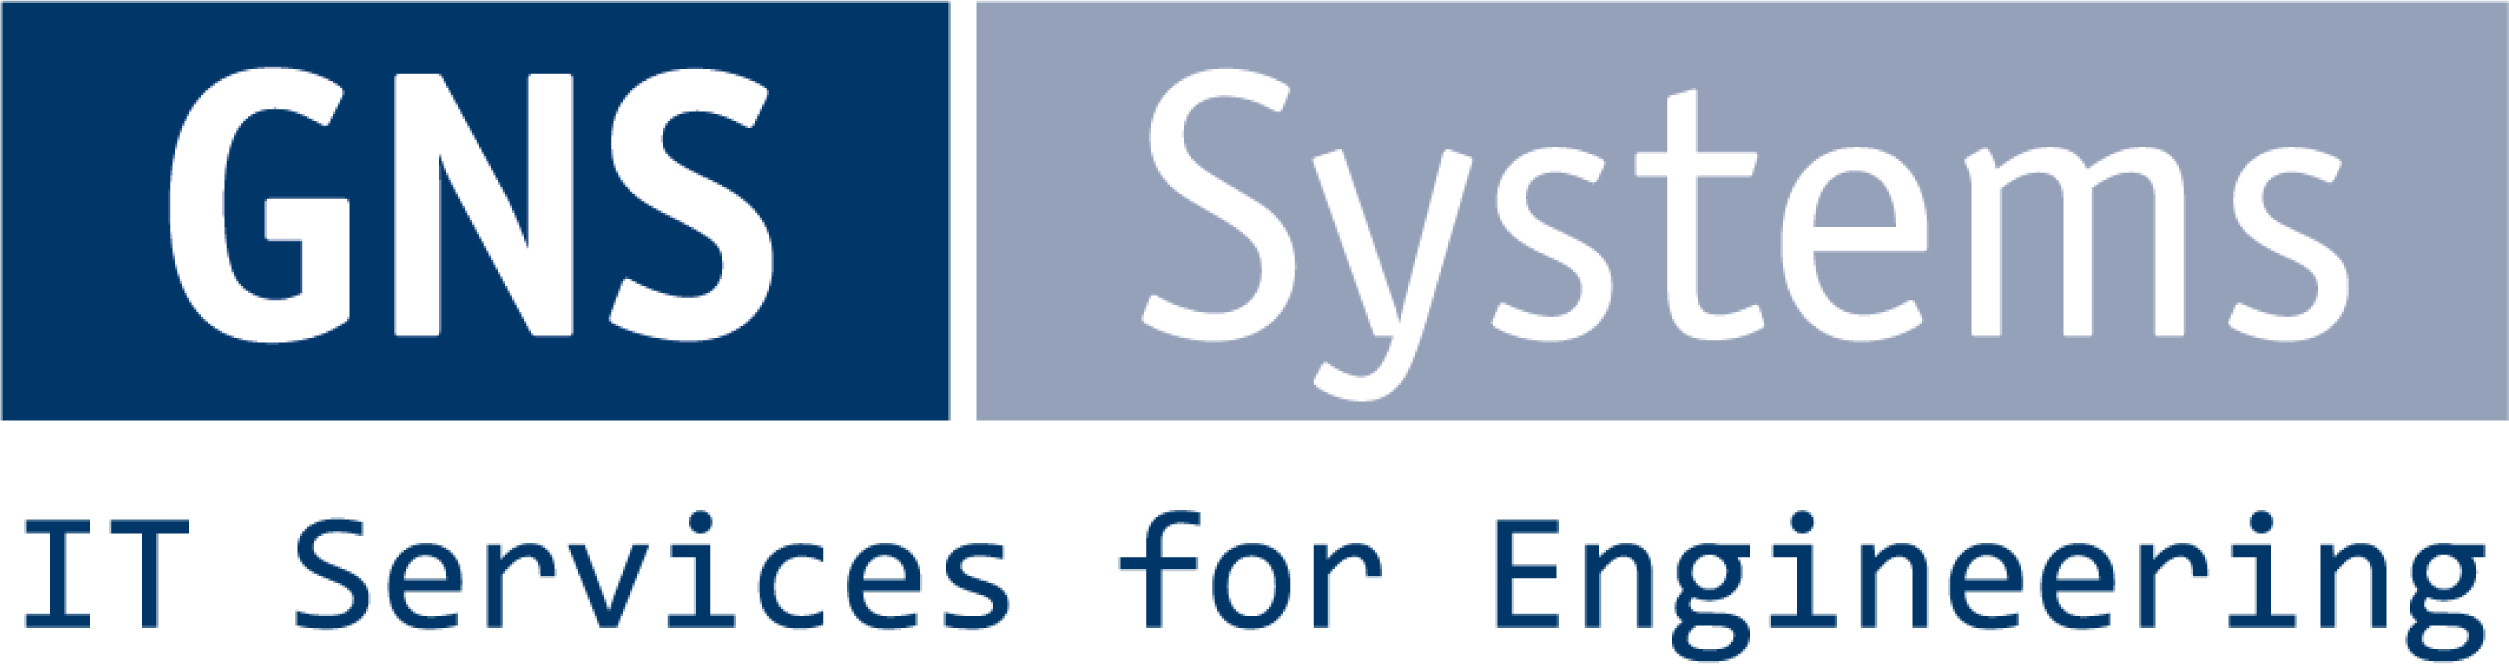 Logo GNS Systems EN 4c 300dpi